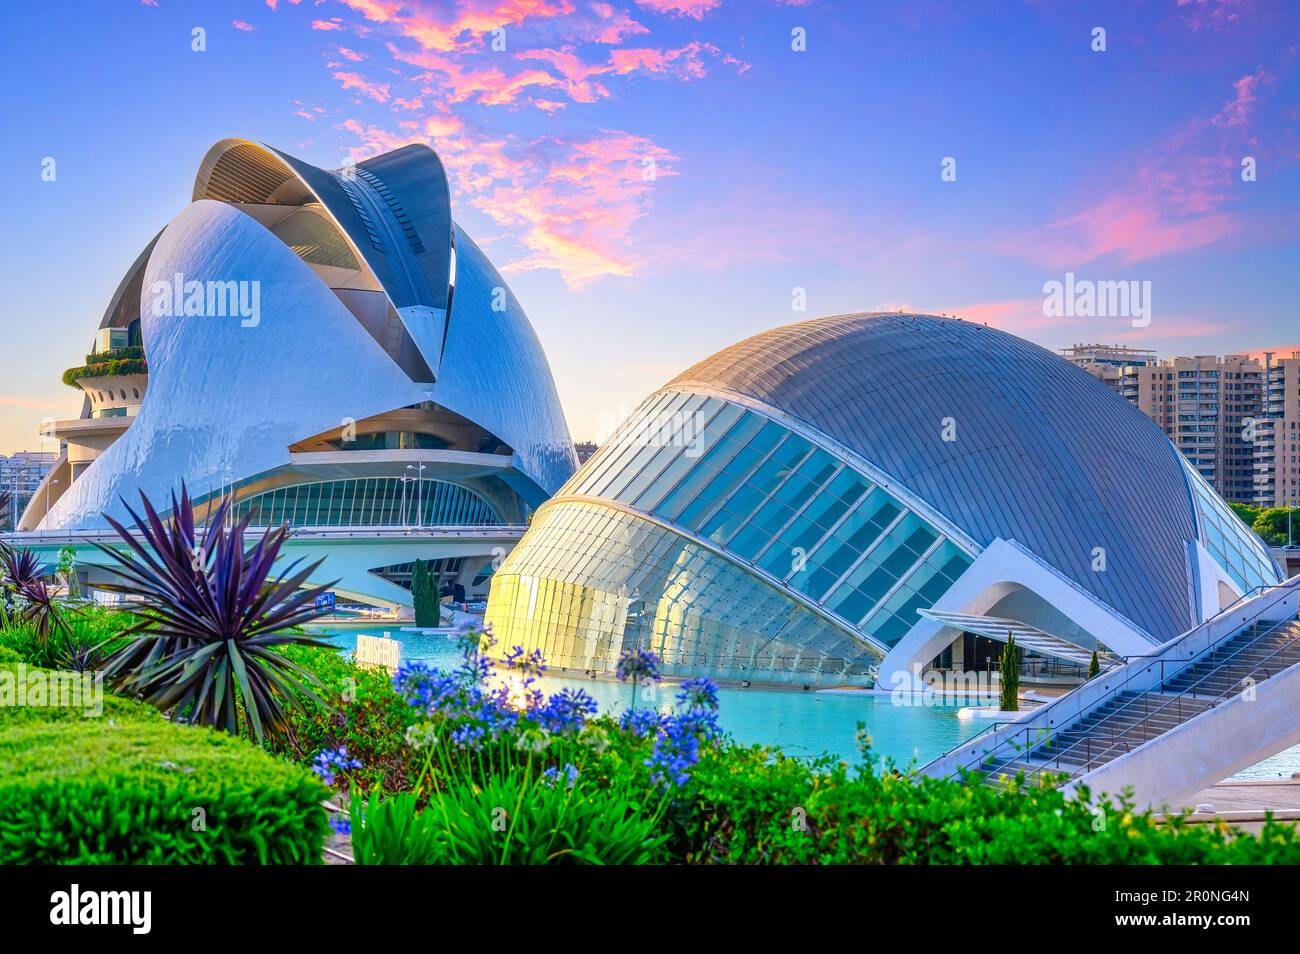 Valencia, Spain - July 17, 2022: L'Hemisferic and the Palau de les Arts buildings. The 'Ciudad de las Artes y las Ciencias' is an international landma Stock Photo